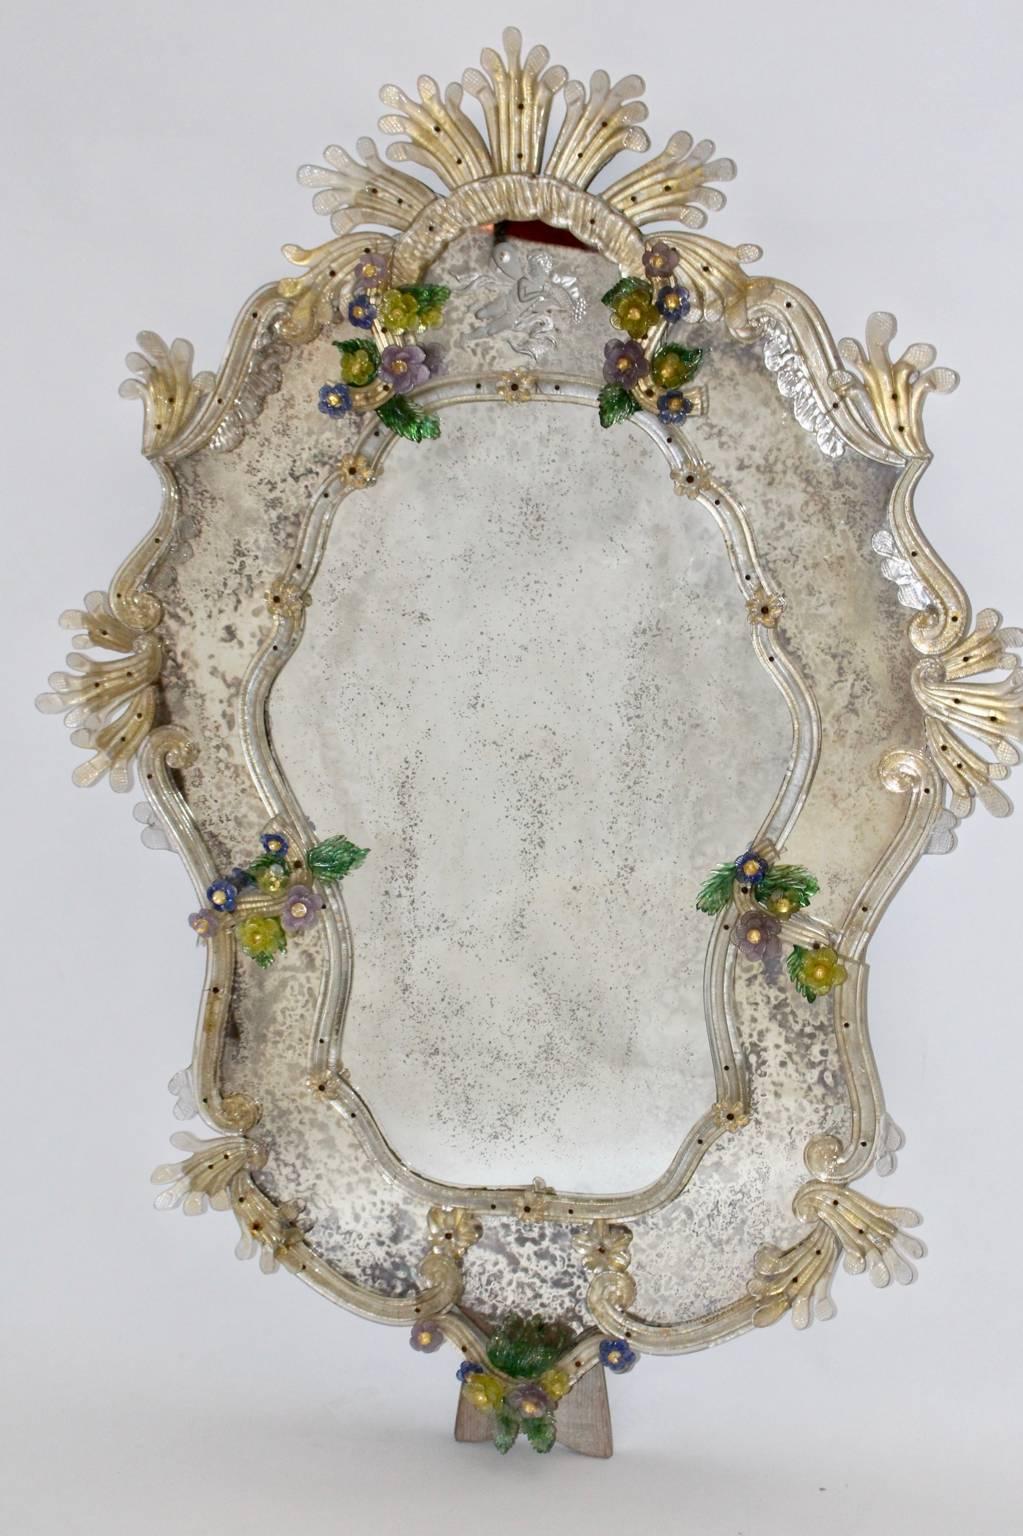 Ce charmant miroir mural fait main a été conçu et fabriqué à Venise dans les années 1950.
Le cadre du miroir est décoré de nombreuses fleurs et éléments multicolores en verre de Murano réalisés à la main.
La partie supérieure du miroir est ornée